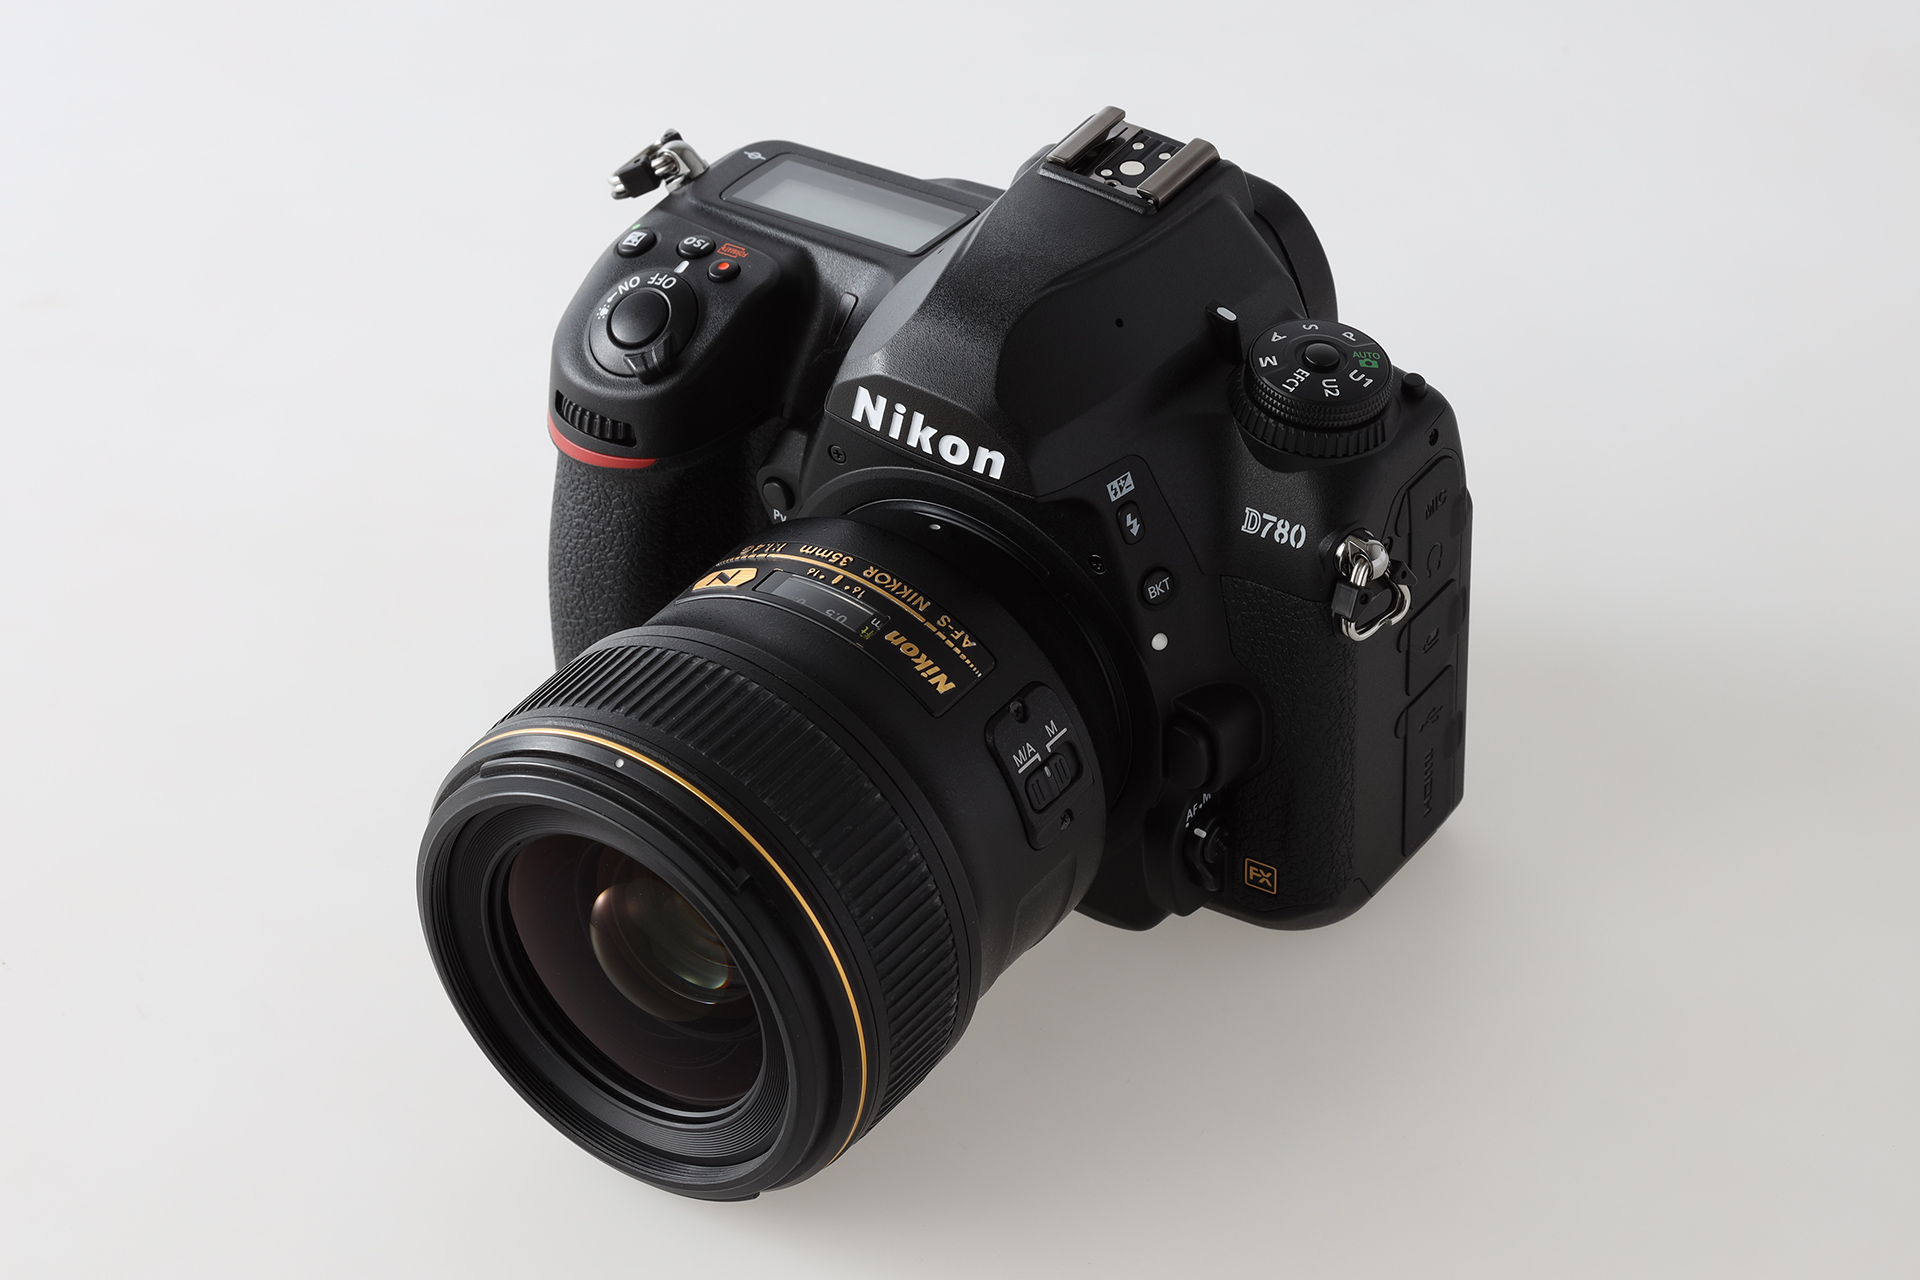 D780 一眼レフ Nikon ニコン - デジタルカメラ